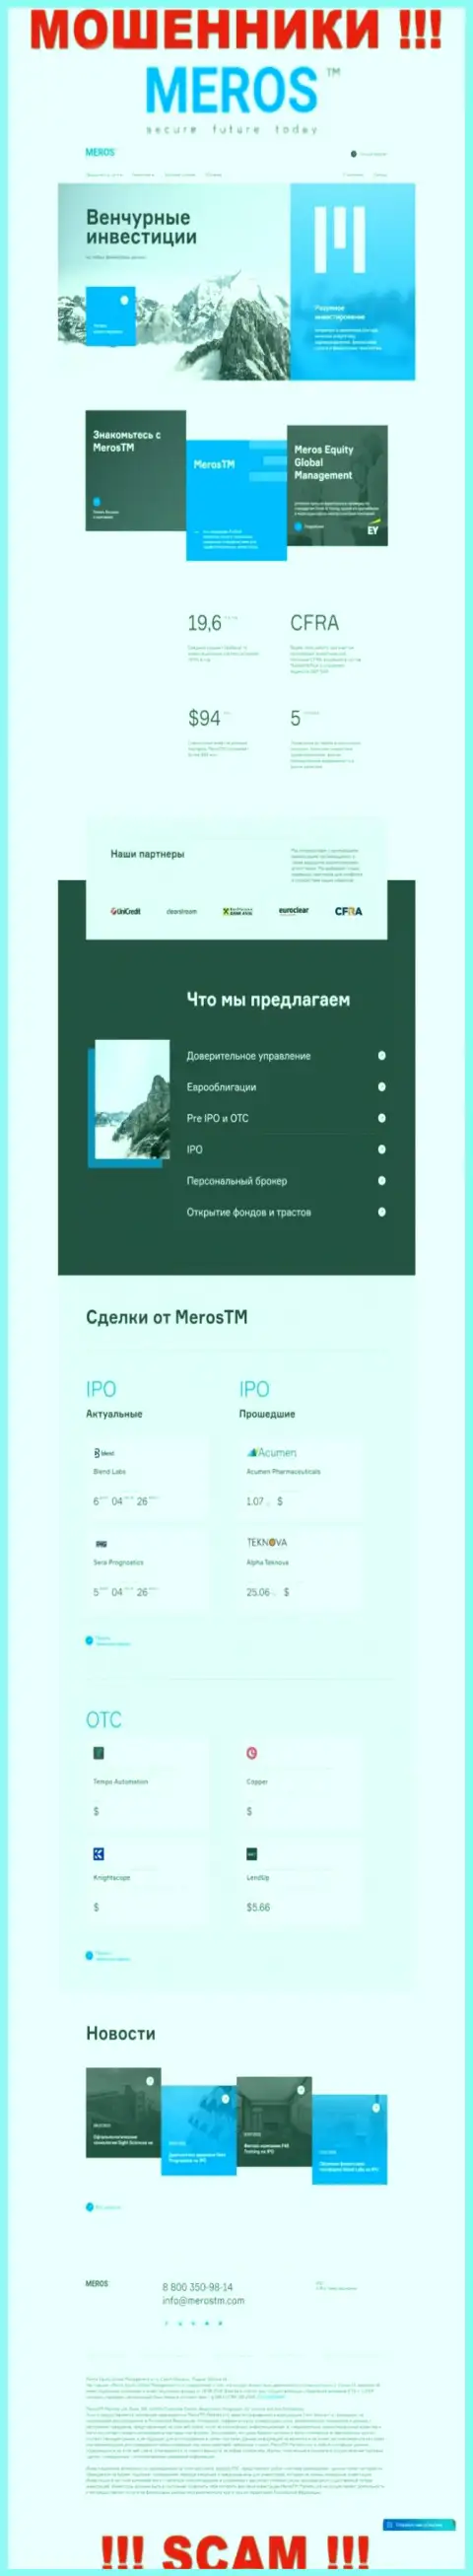 Обзор официального сайта кидал MerosMT Markets LLC